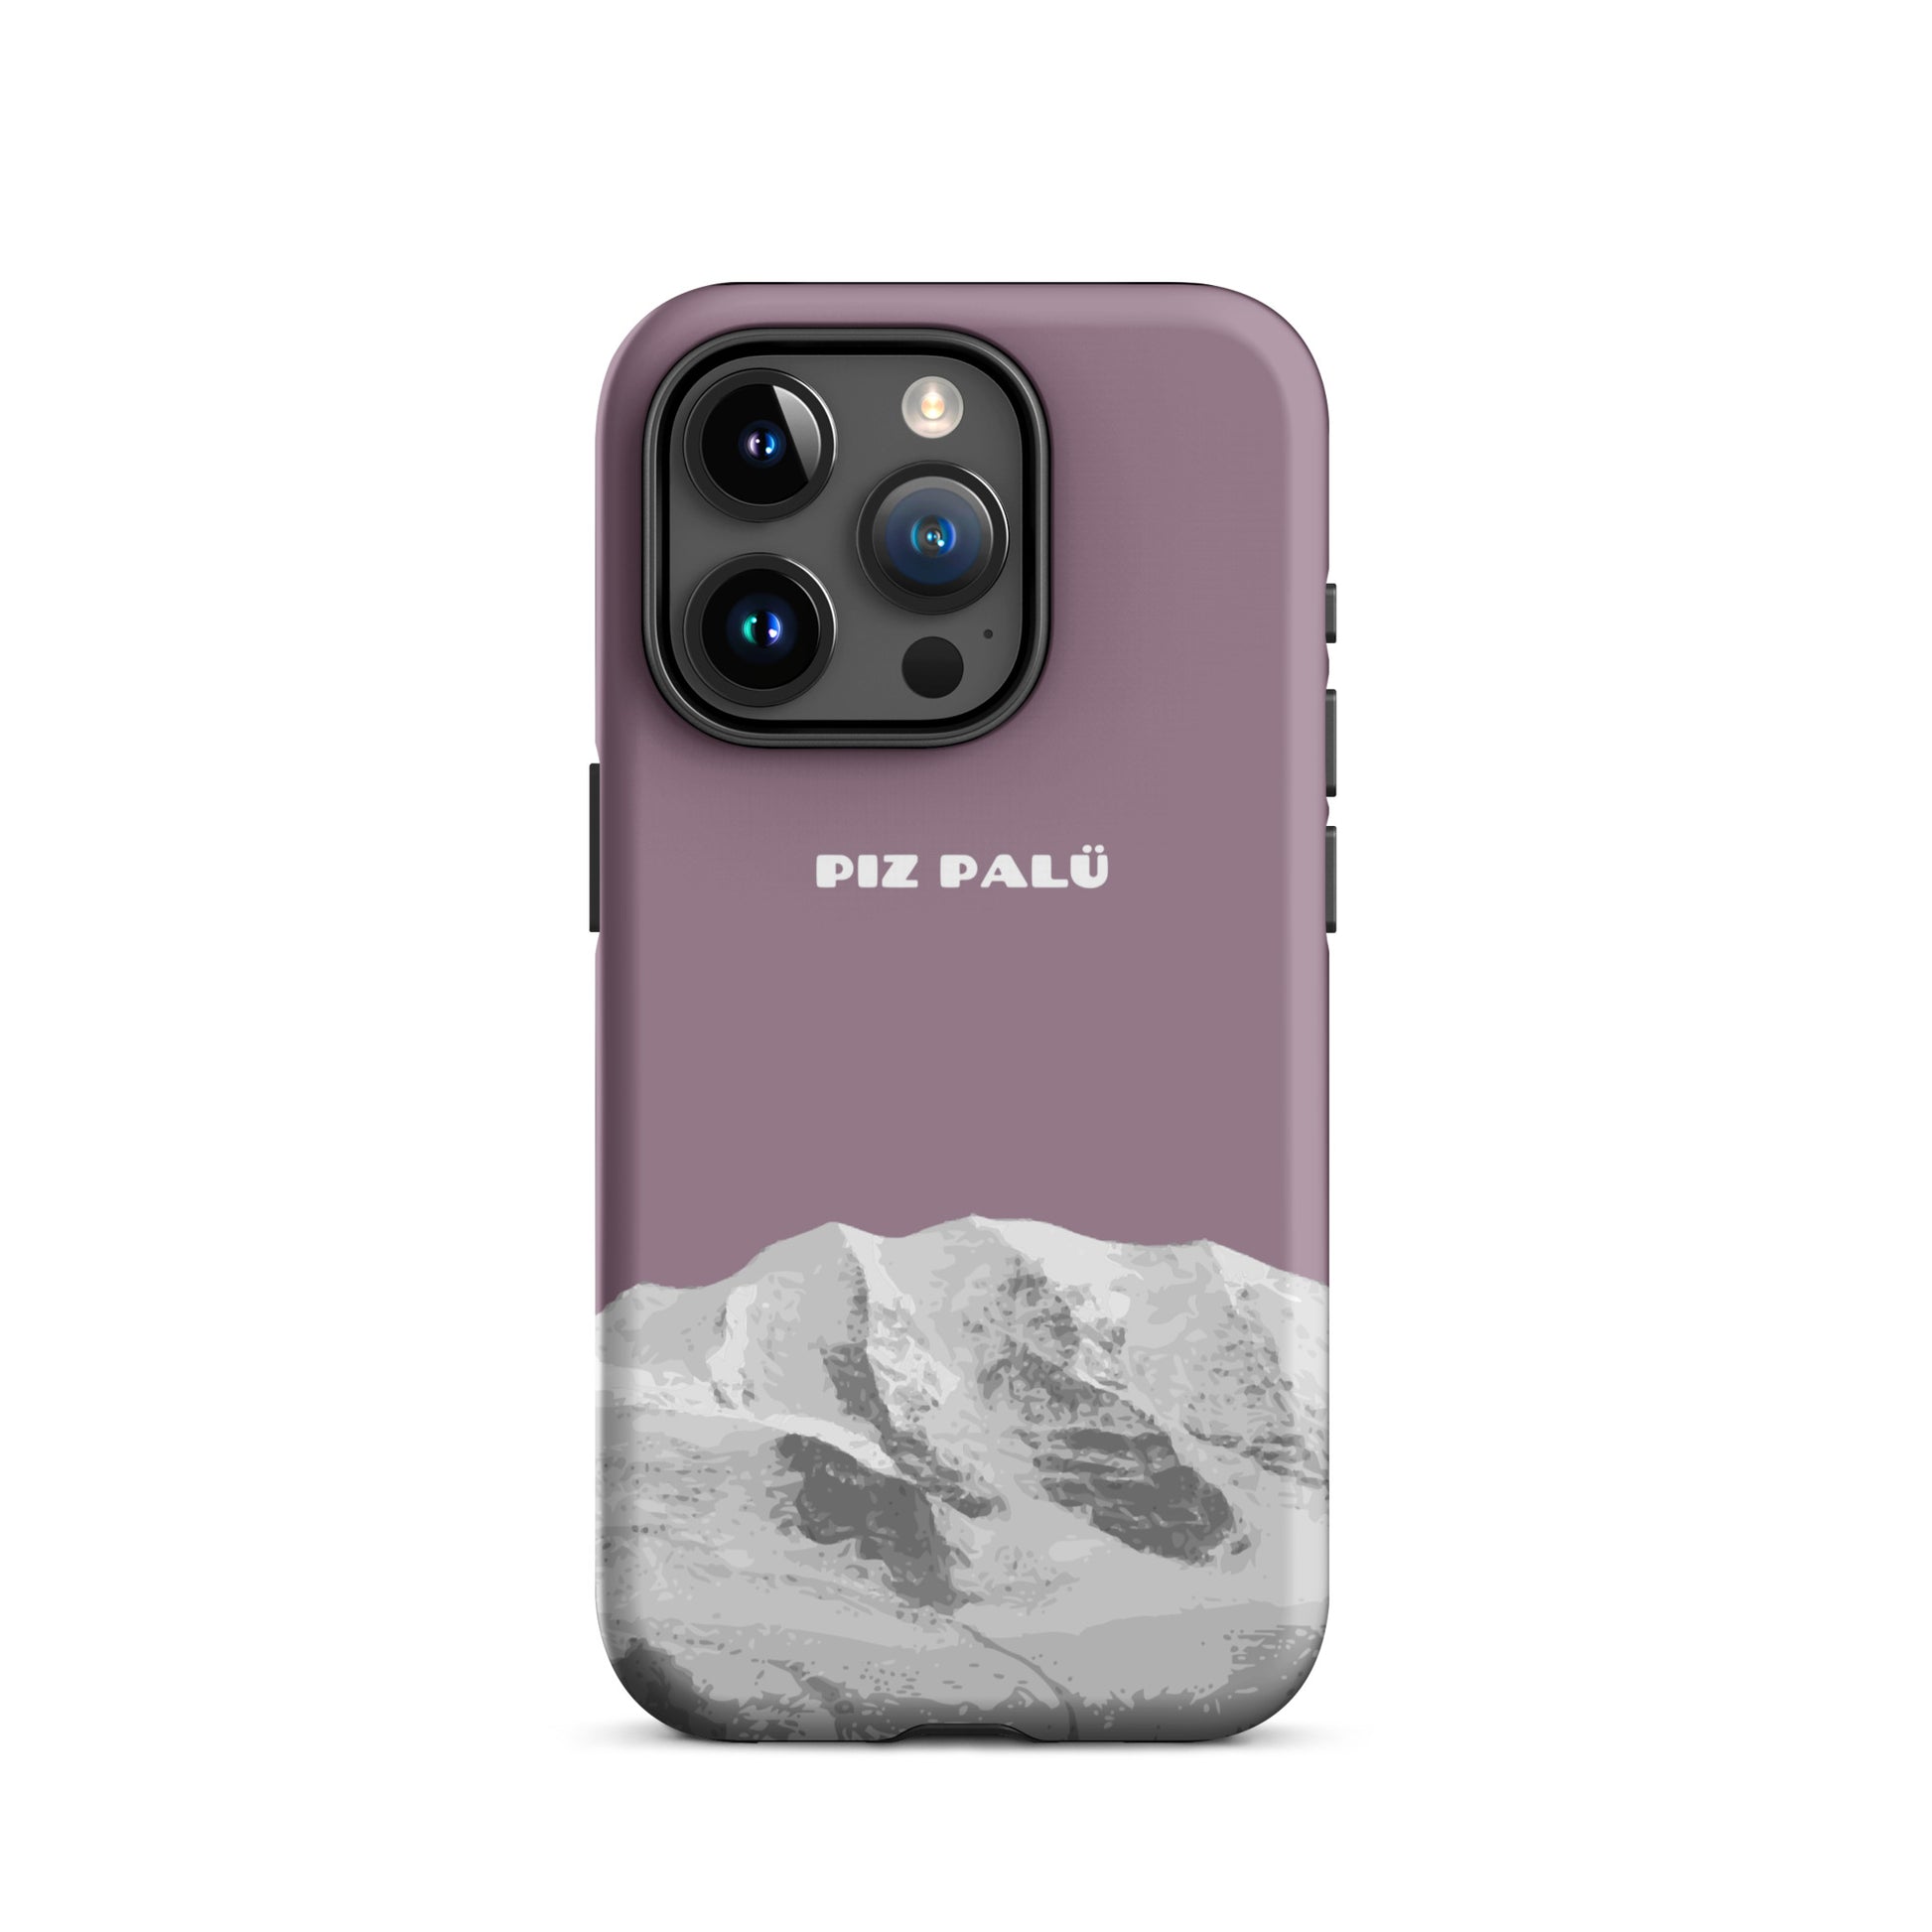 Hülle für das iPhone 15 Pro von Apple in der Farbe Pastellviolett, dass den Piz Palü in Graubünden zeigt.